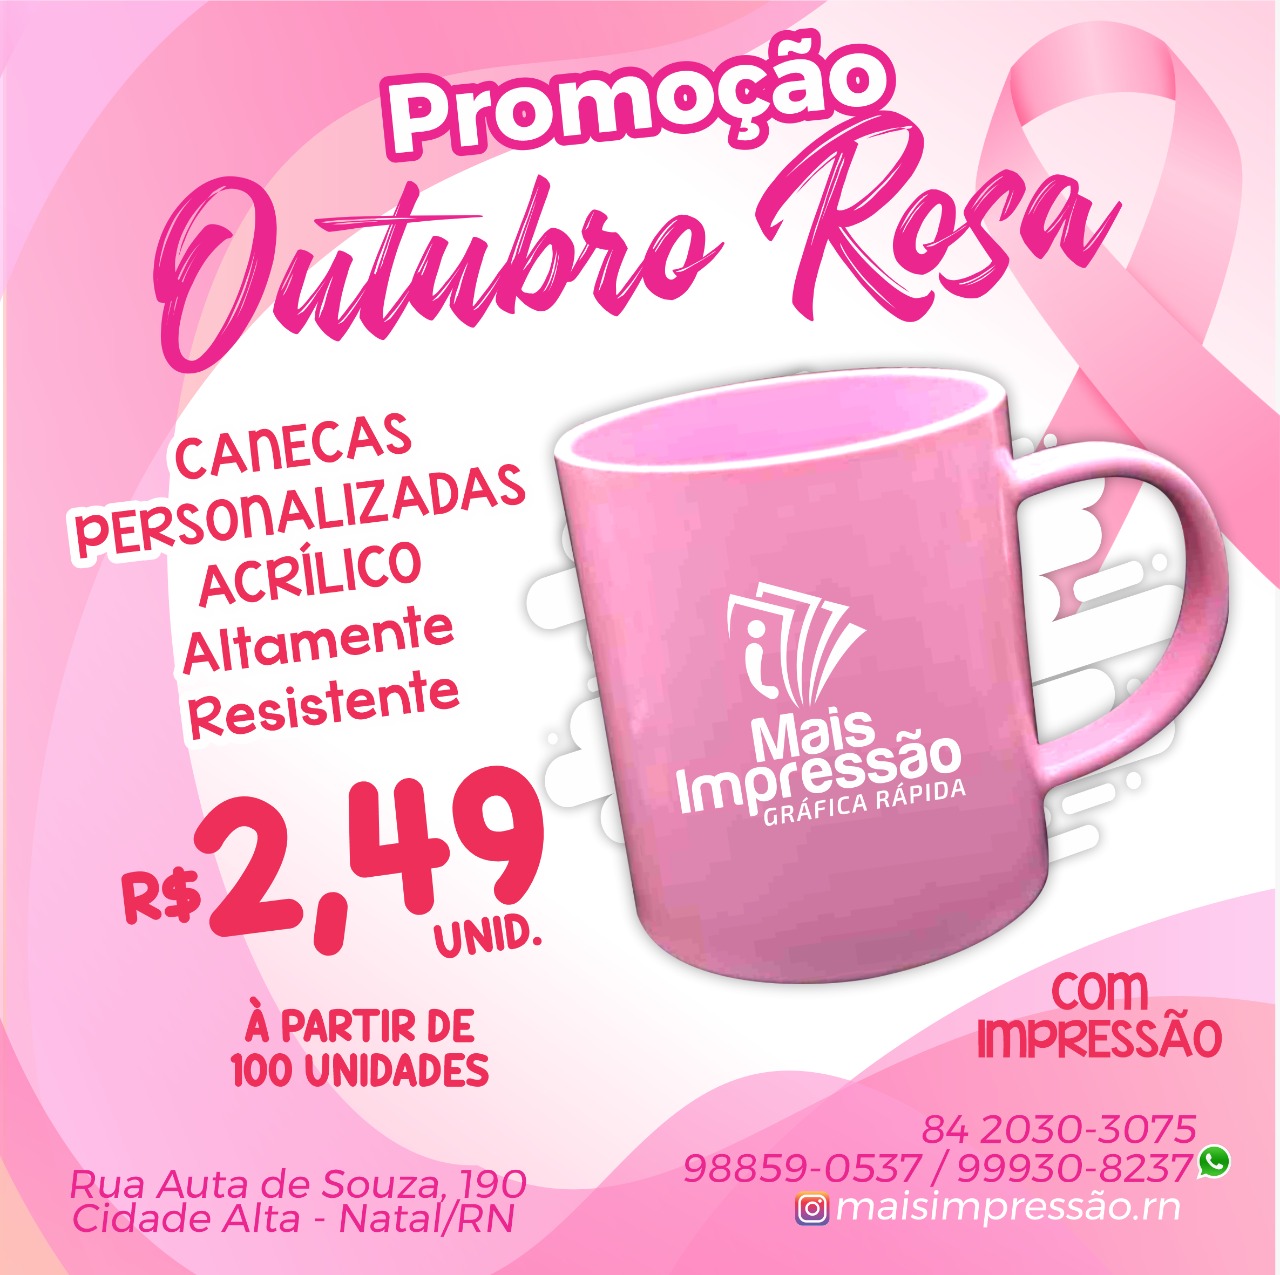 Promoção: Promoção Outubro Rosa Caneca Personalizada